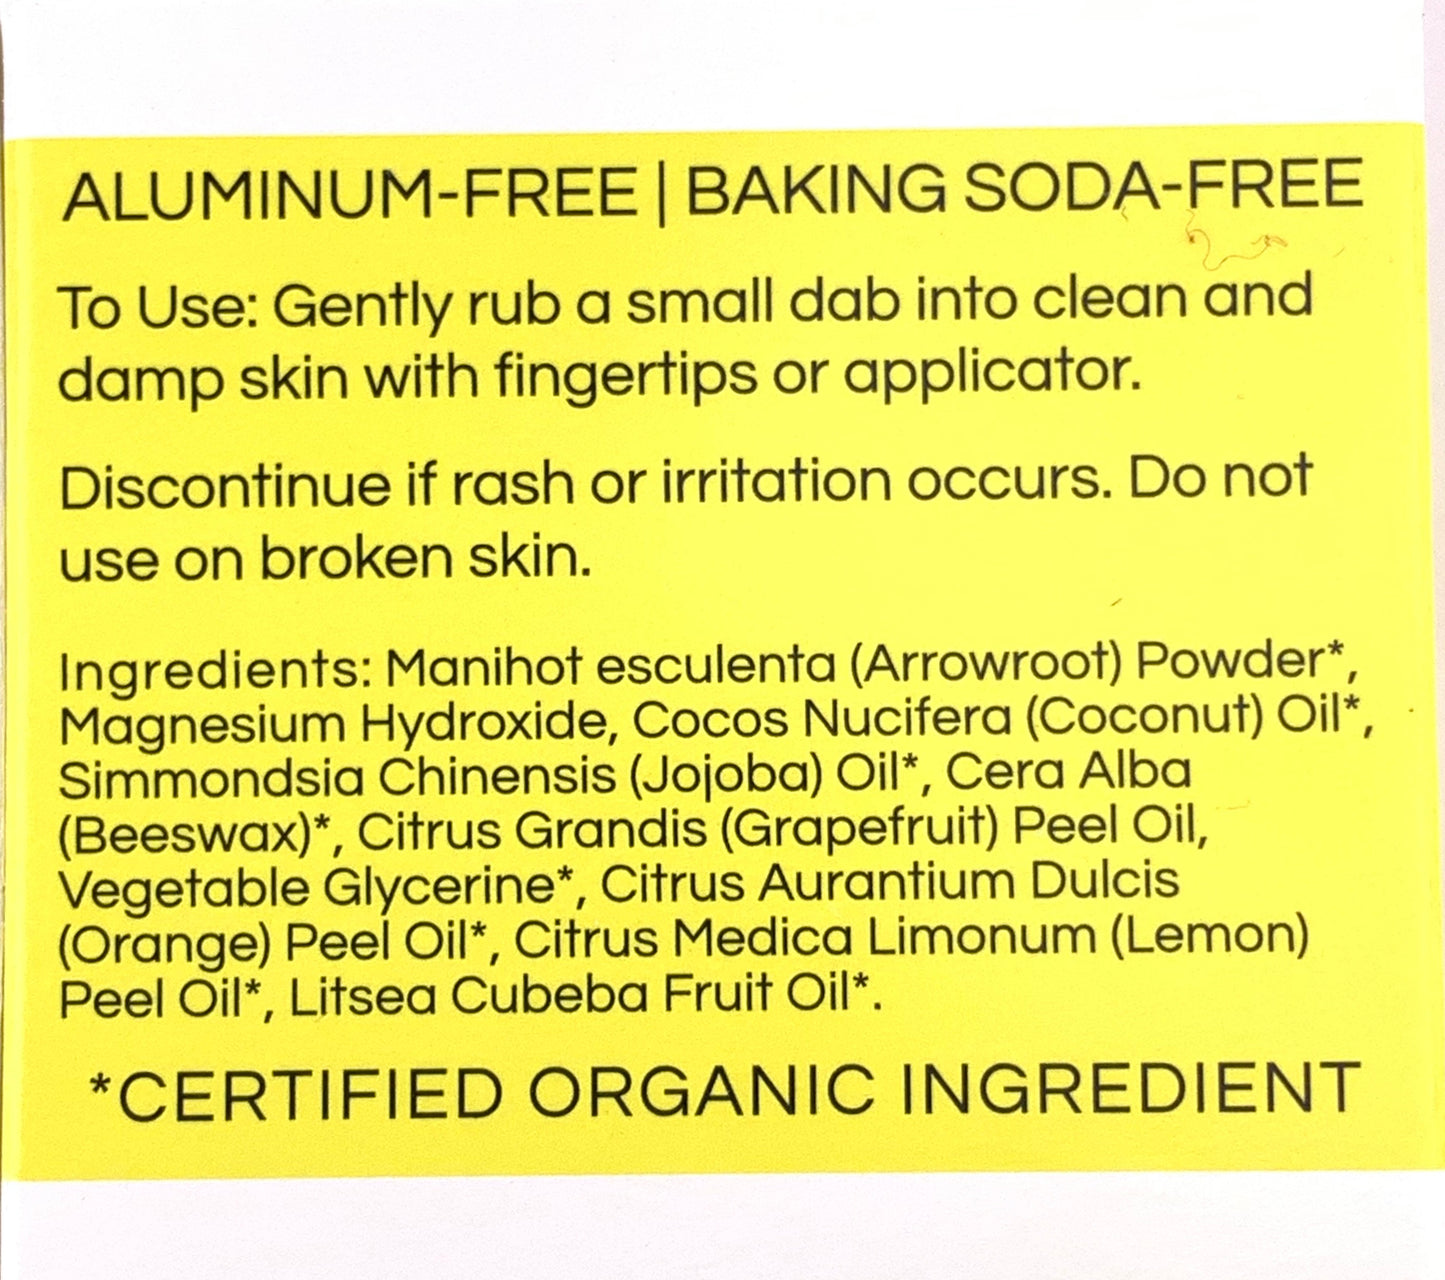 Deodorant Cream - Grapefruit Lemon